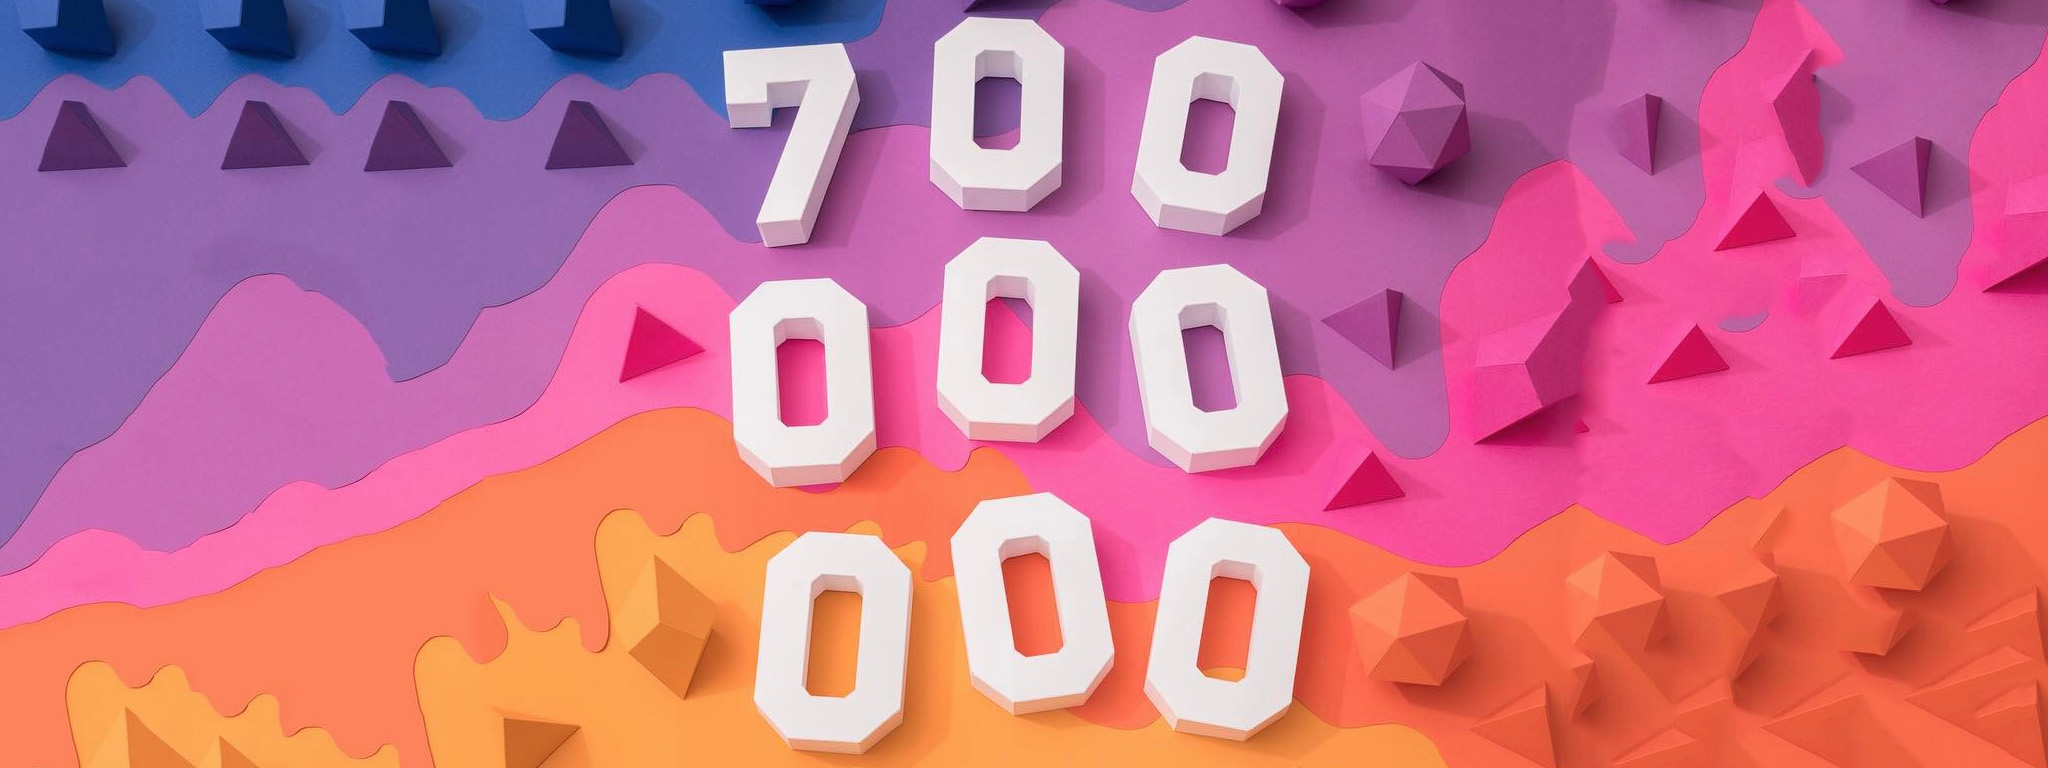 Instagram đã có 700 triệu thành viên